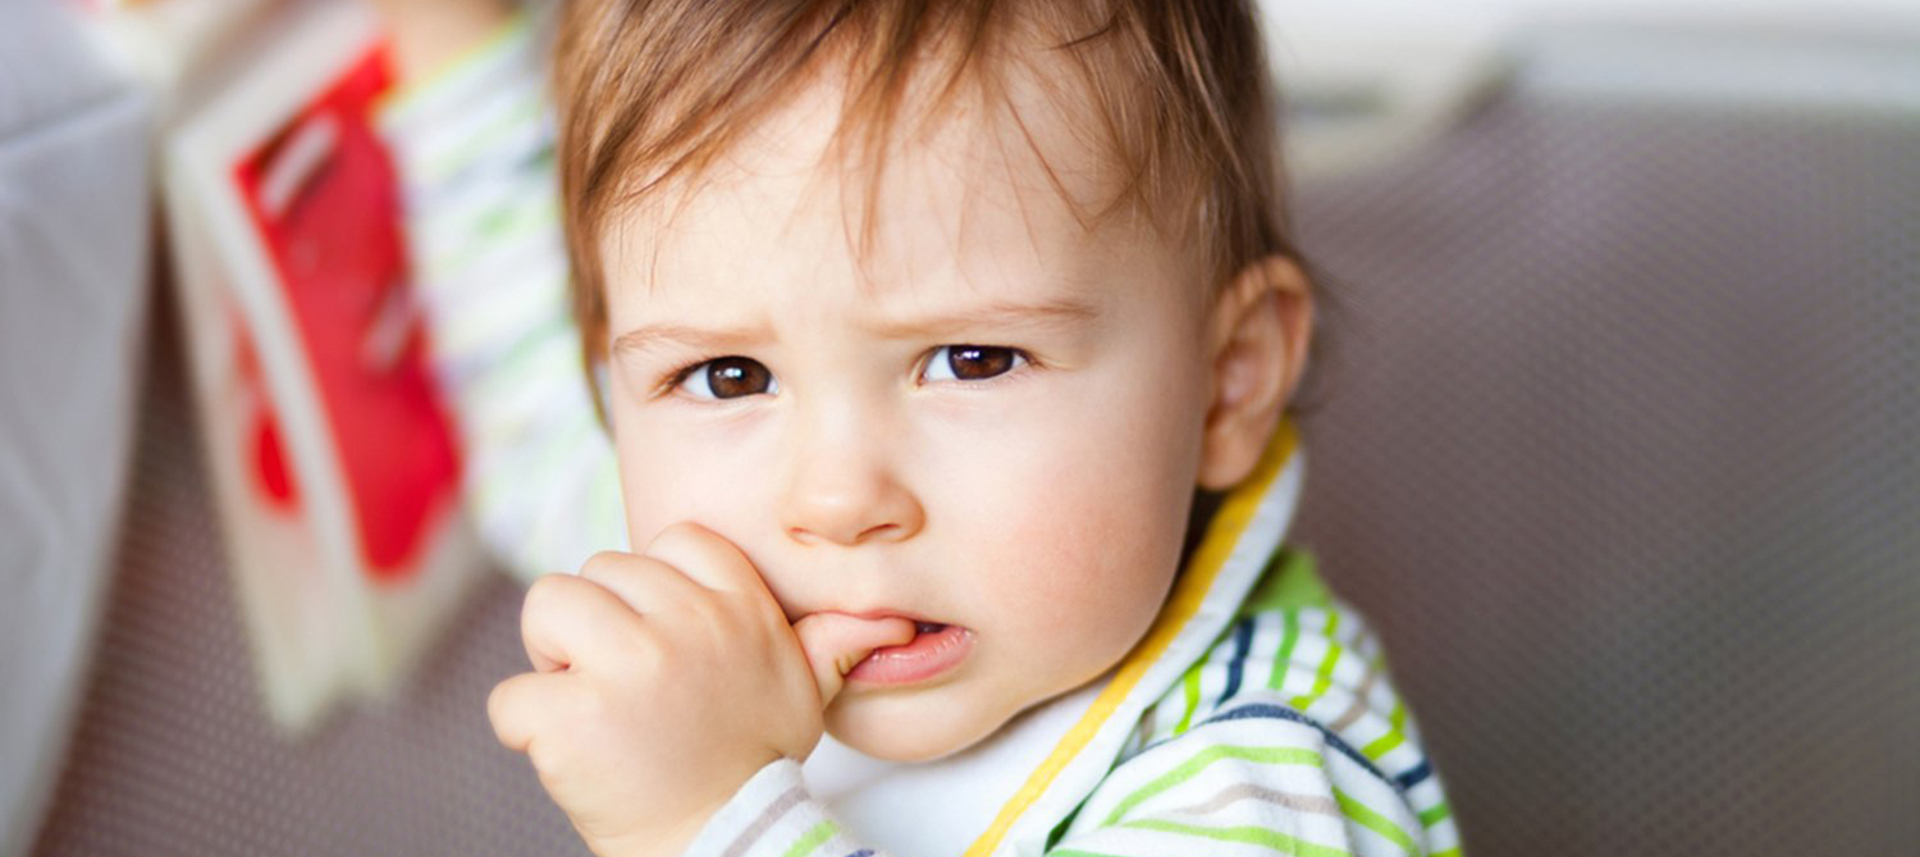 Ребенок грызет ногти. Как отучить от вредной привычки?